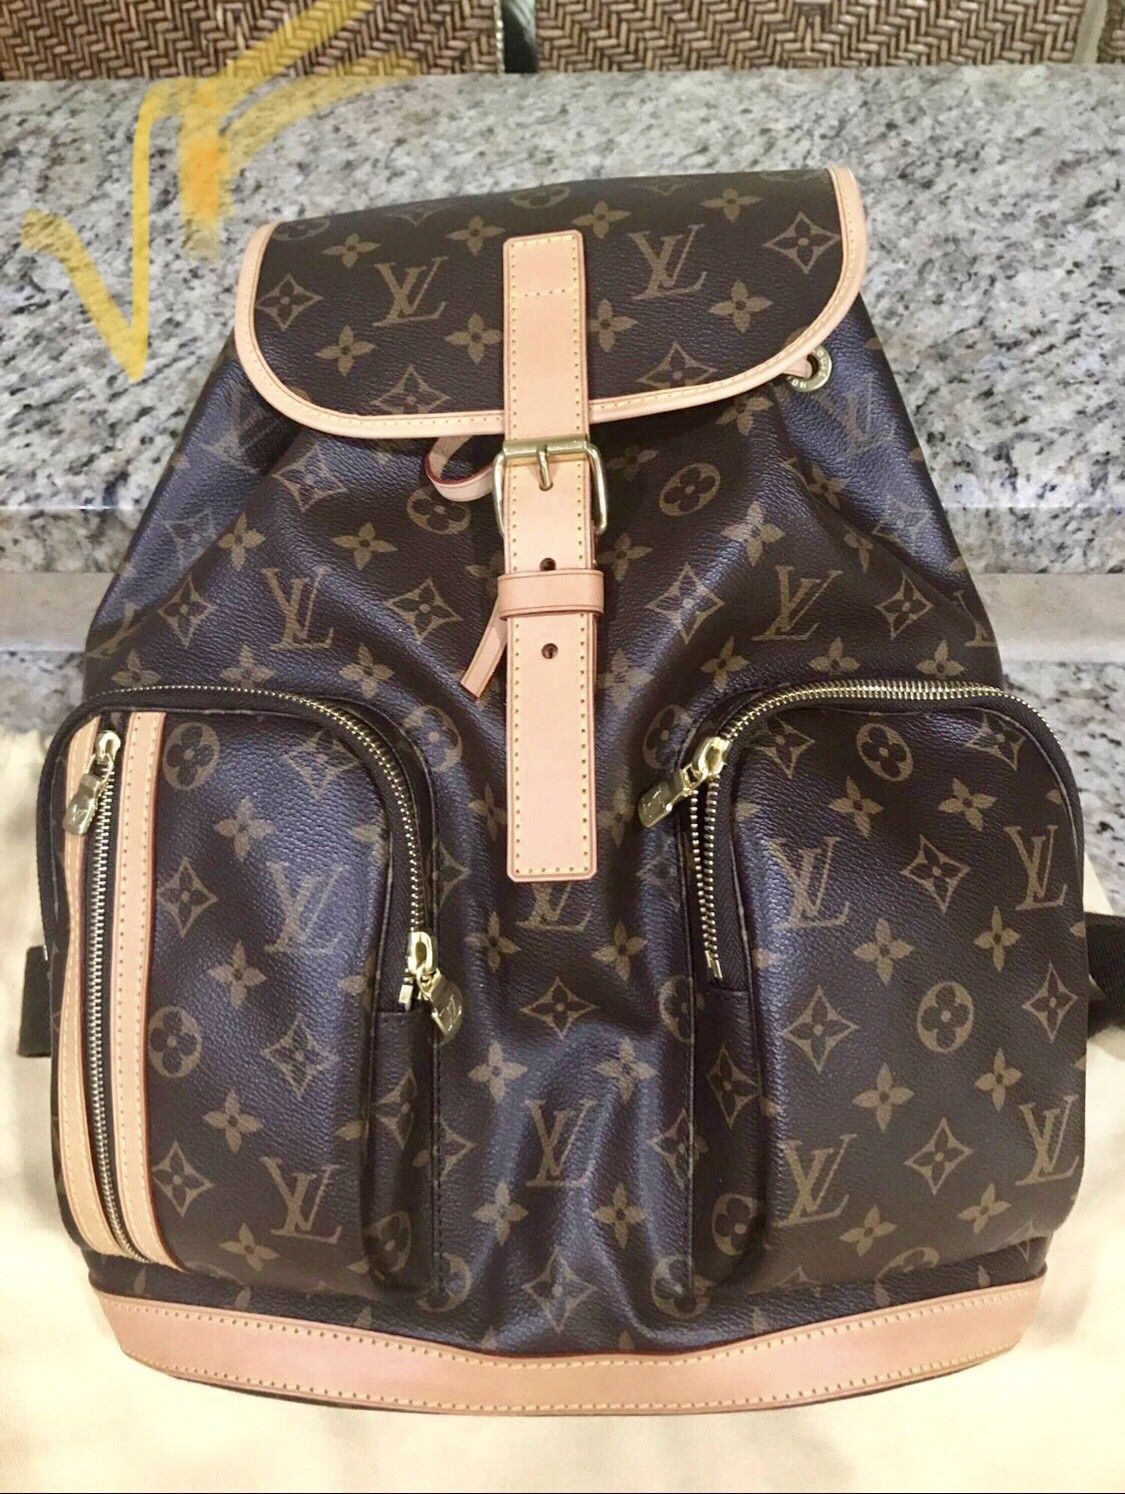 Les sacs à dos Louis Vuitton les plus chères vendus sur eBay !